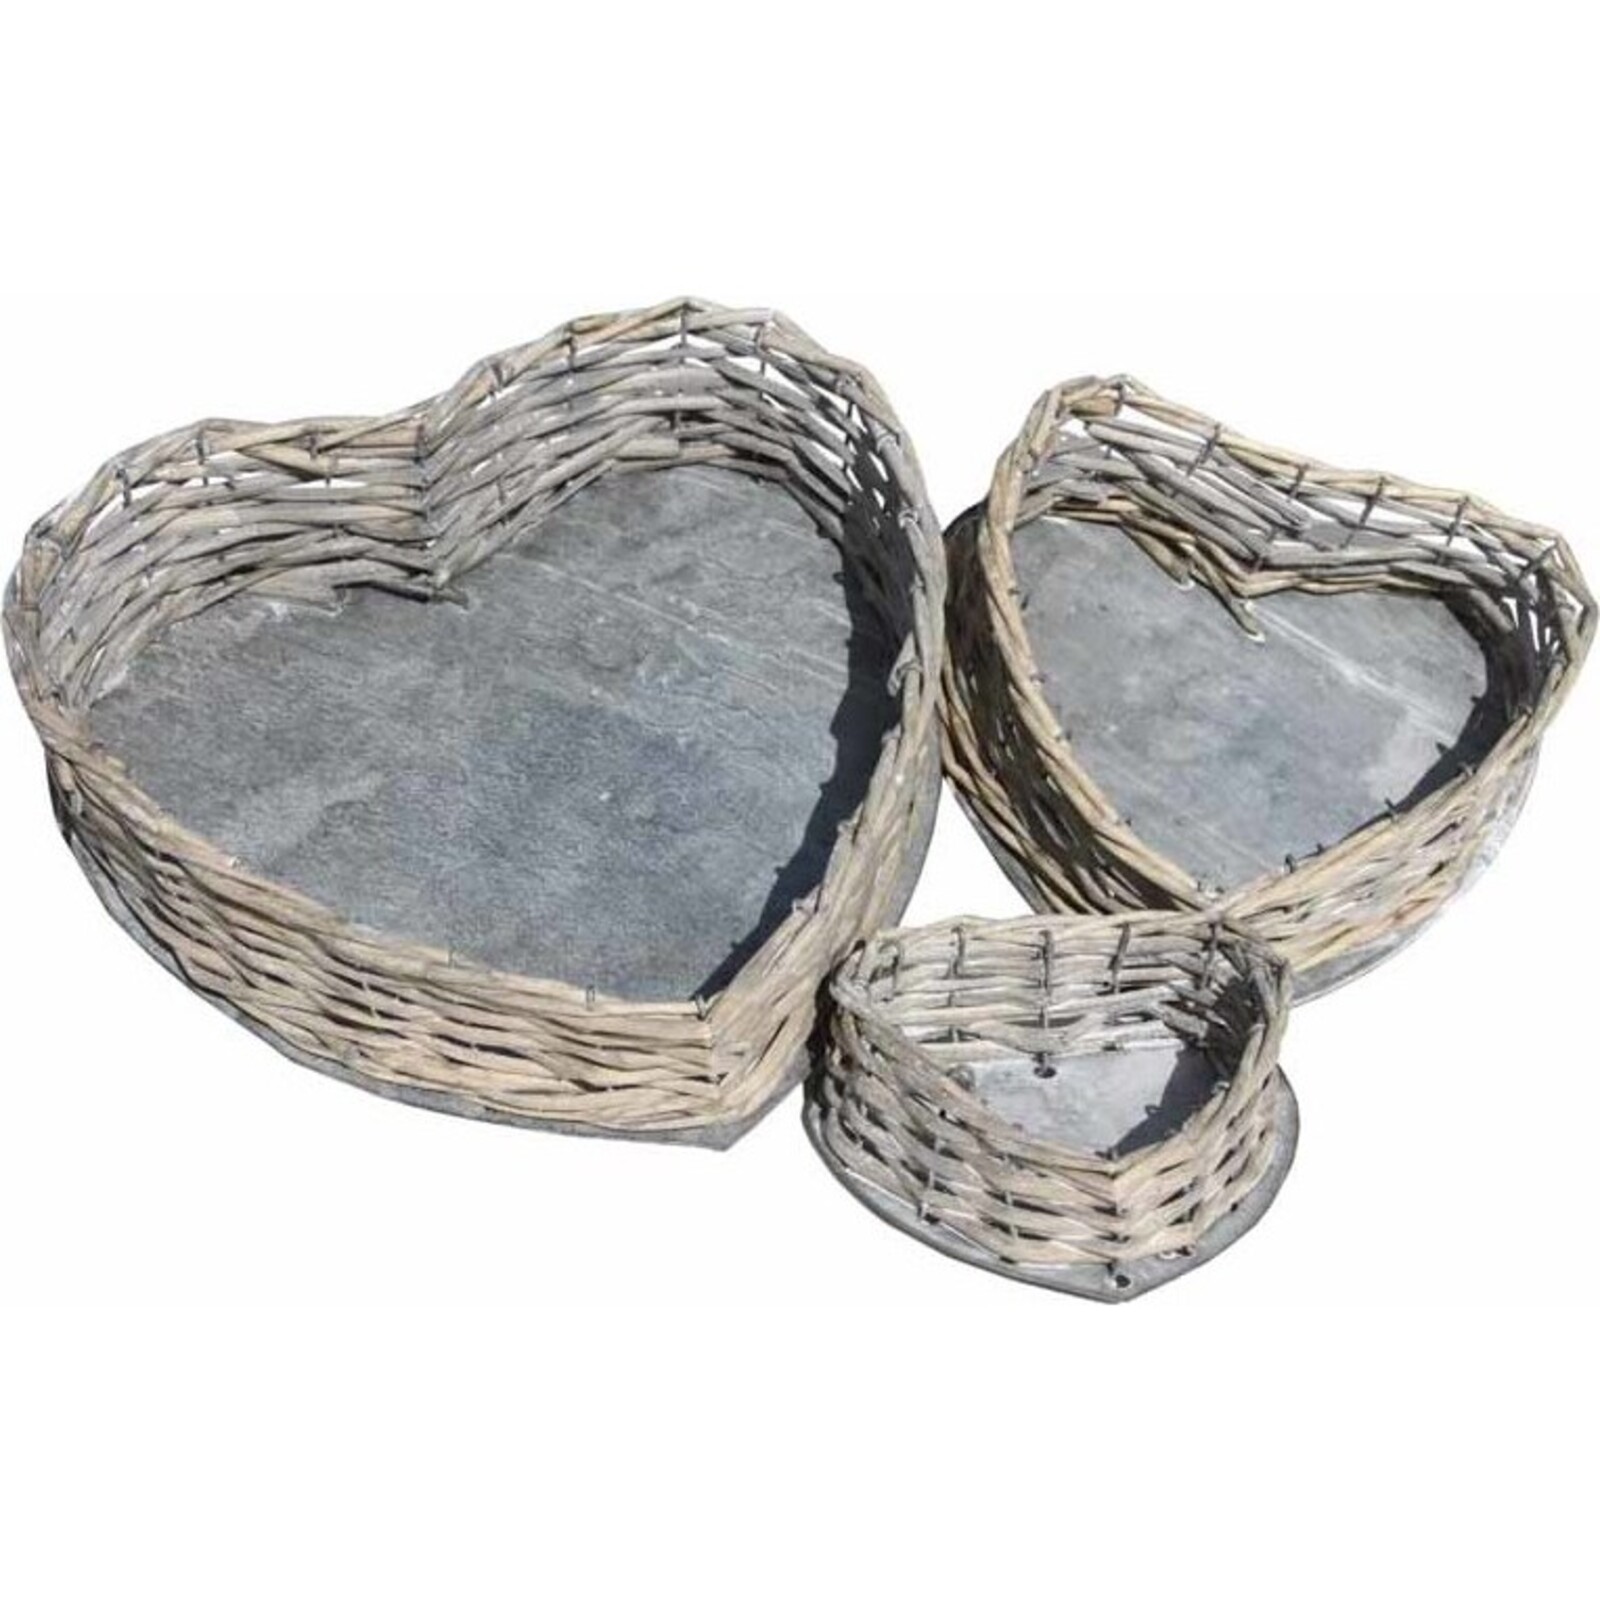 Vado Heart Baskets S/3